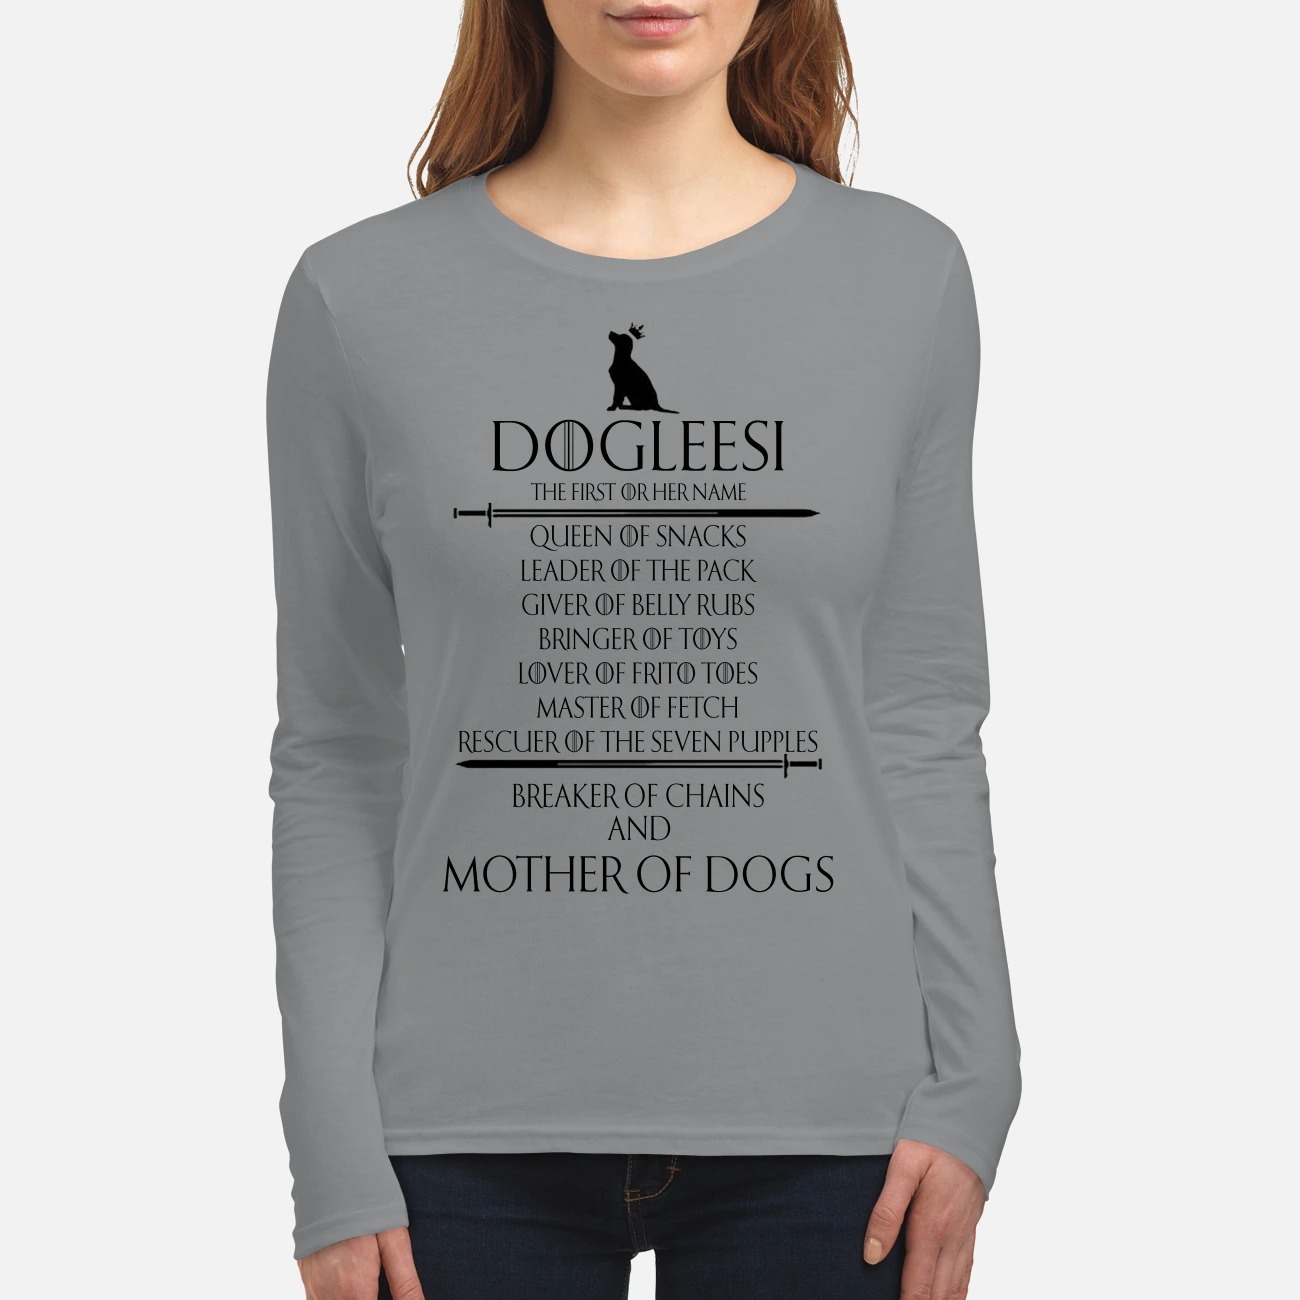 Dogleesi mother of dogs women's long sleeved shirt